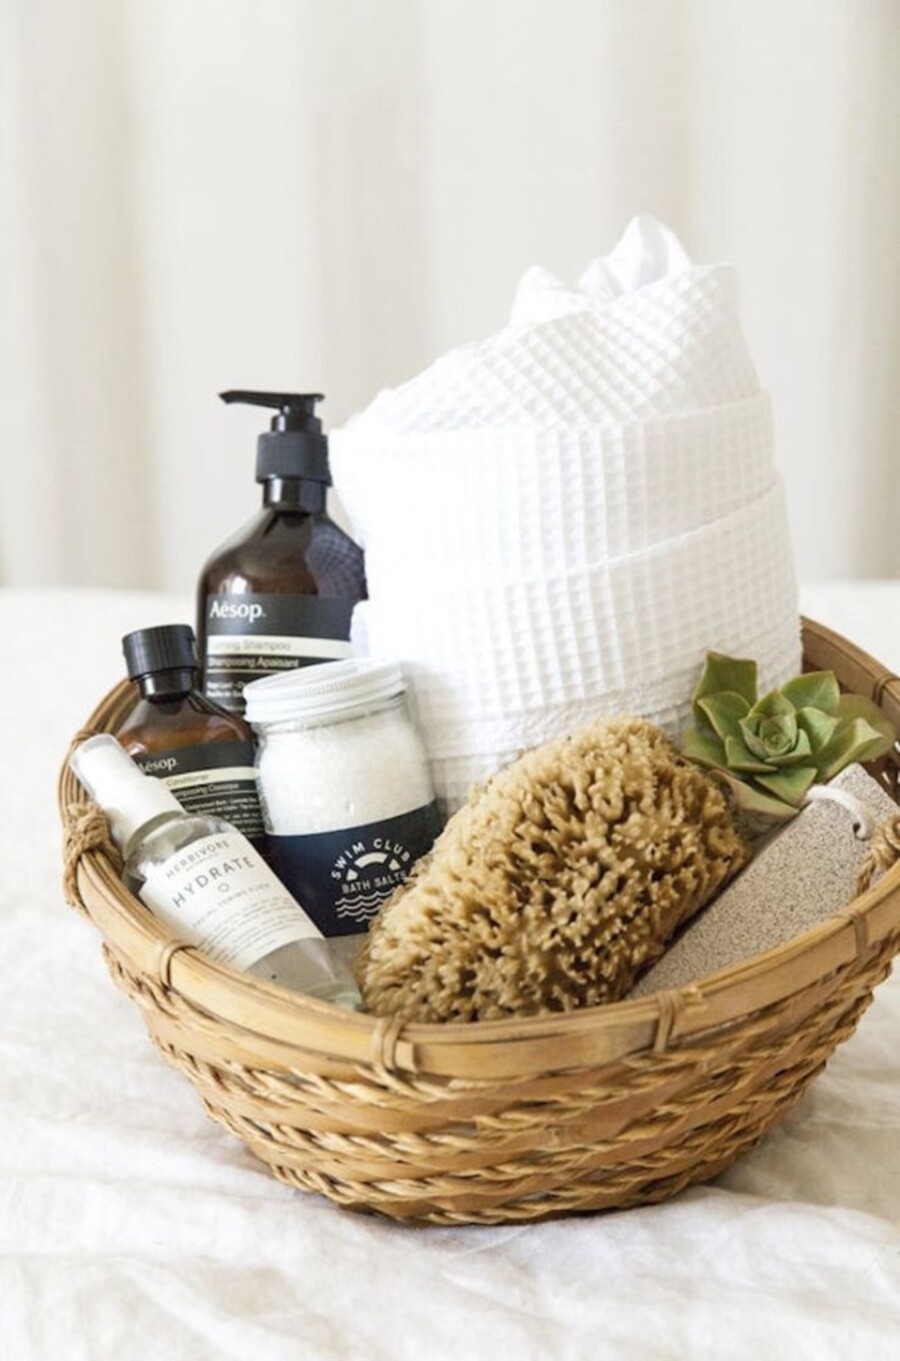 Detalle de una cesta de fibras naturales con diversos artículos de higiene en su interior, desde una toalla y esponja hasta shampoo y otros cosméticos.